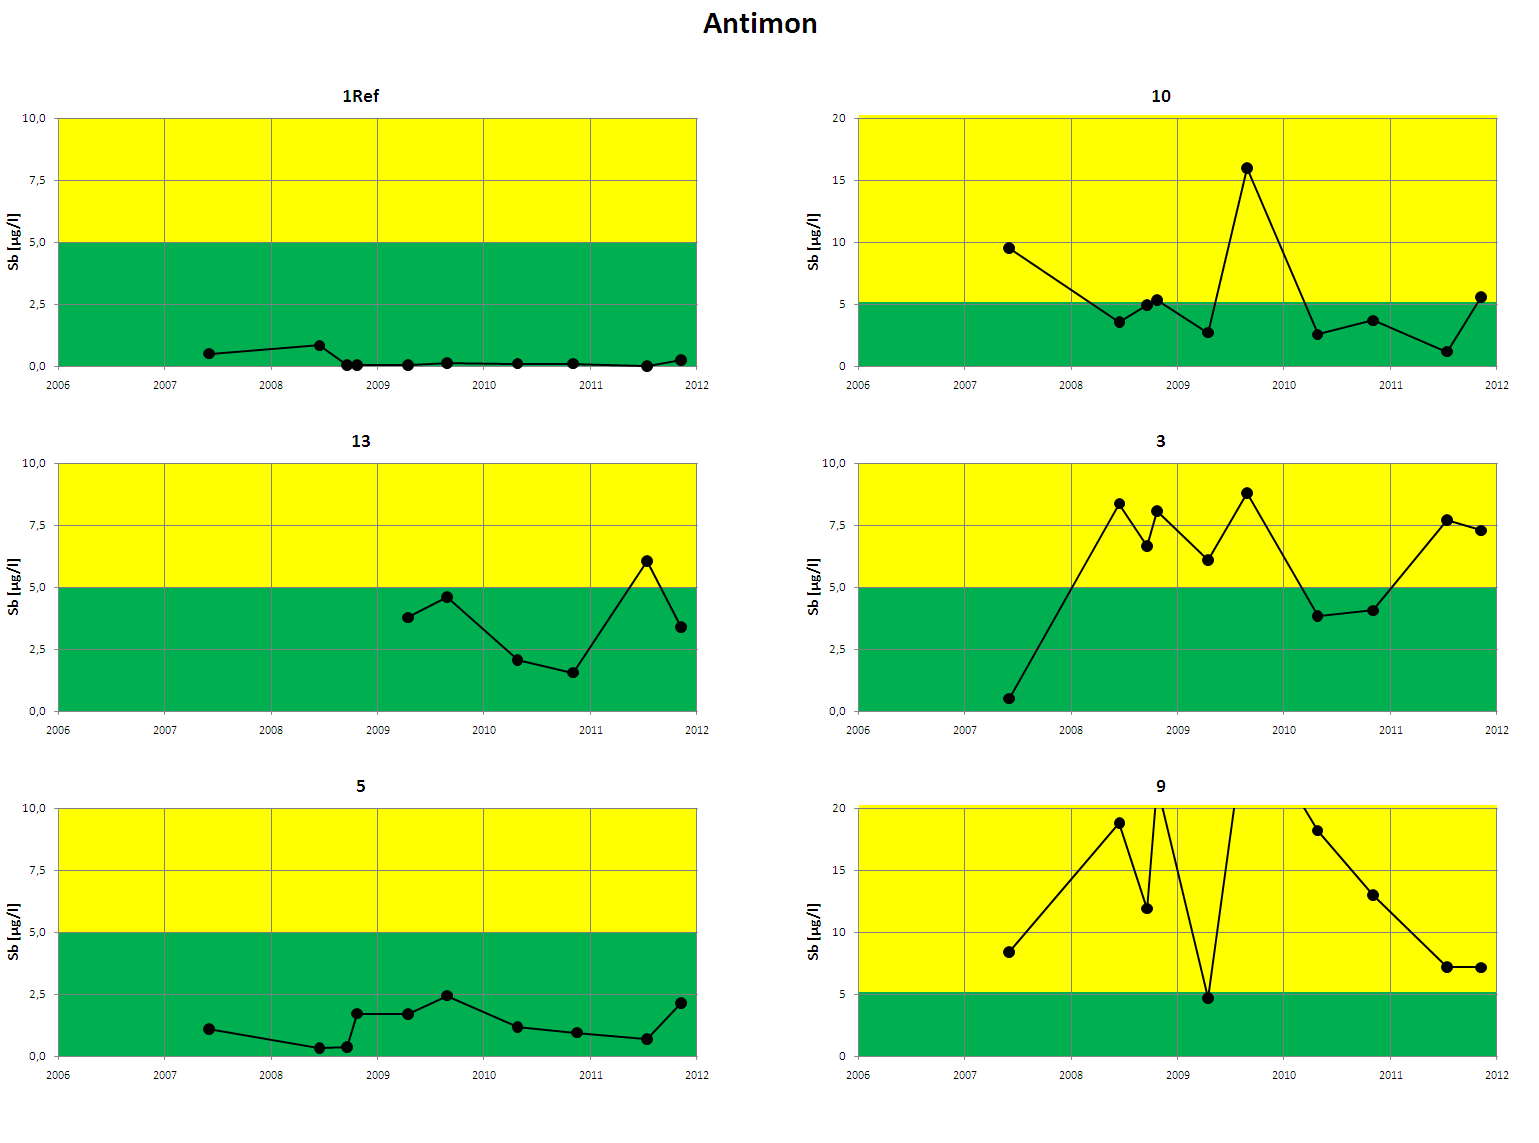 Figur 5. Analyseresultater for antimon i perioden 2007-2011. Før 2010 ble analyseresultater under deteksjonsgrensen (dg) rapportert som dg/2.